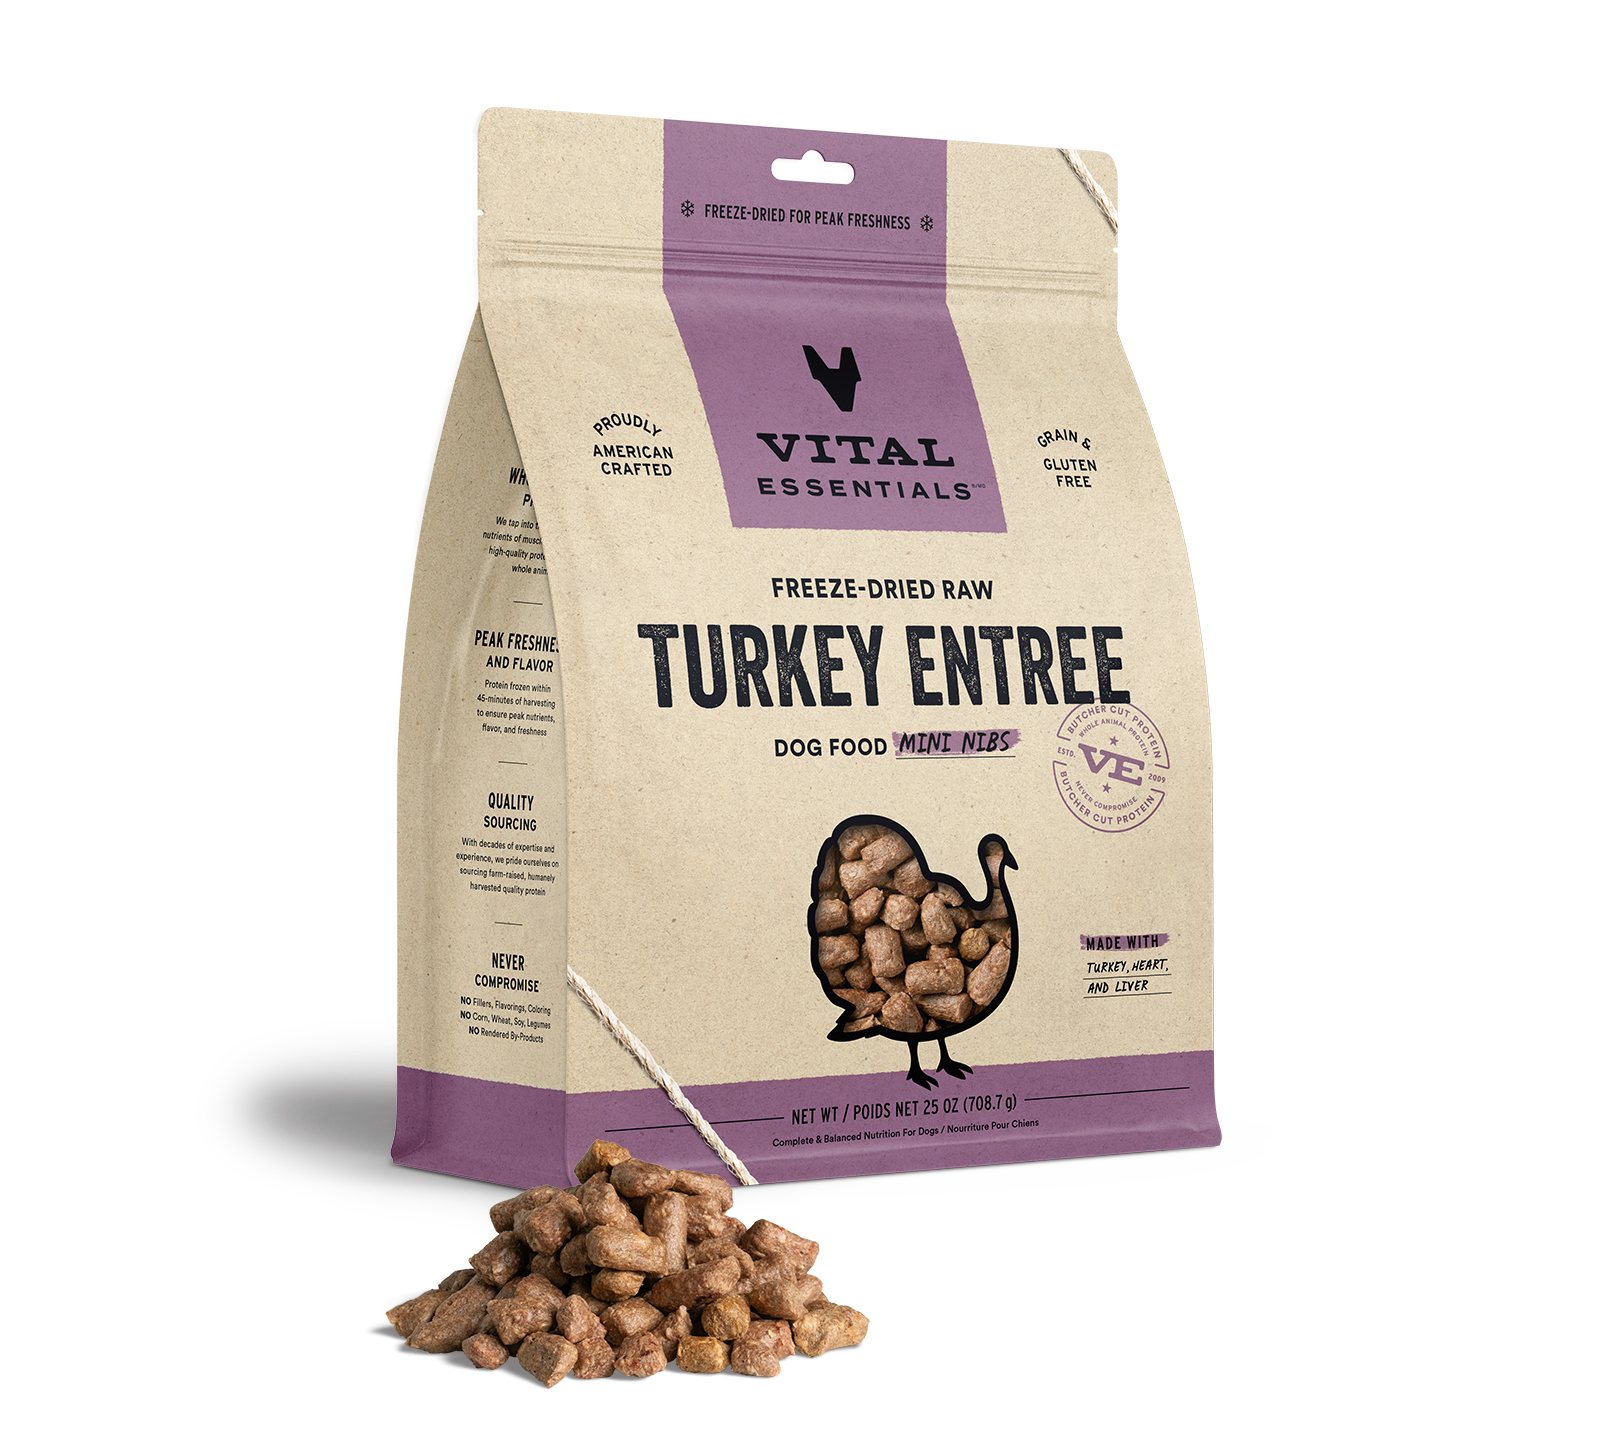 Vital Essentials Freeze-Dried Raw Turkey Entree Dog Food Mini Nibs, 25 oz - Healing/First Aid